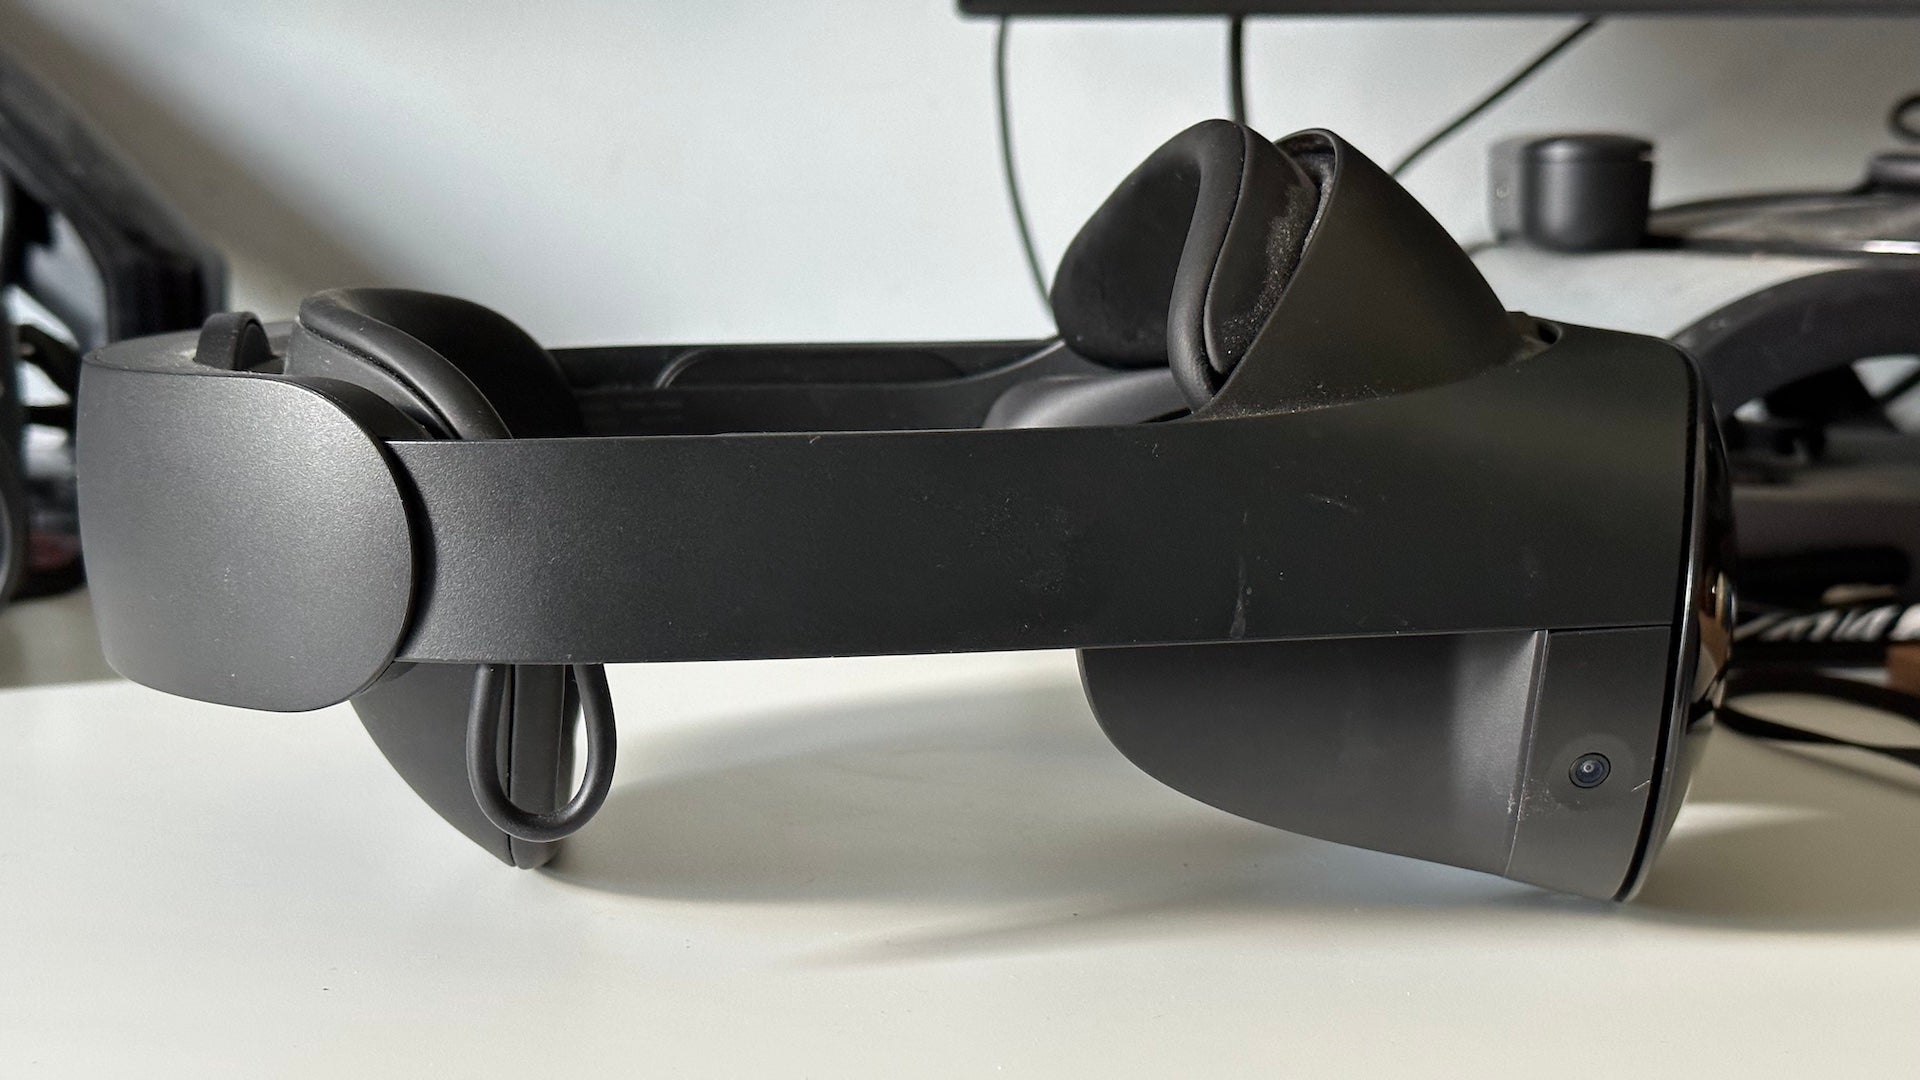 Left ImageMeta Quest Pro VR headset on a white desk.Meta Quest Pro virtual reality headset on a desk.